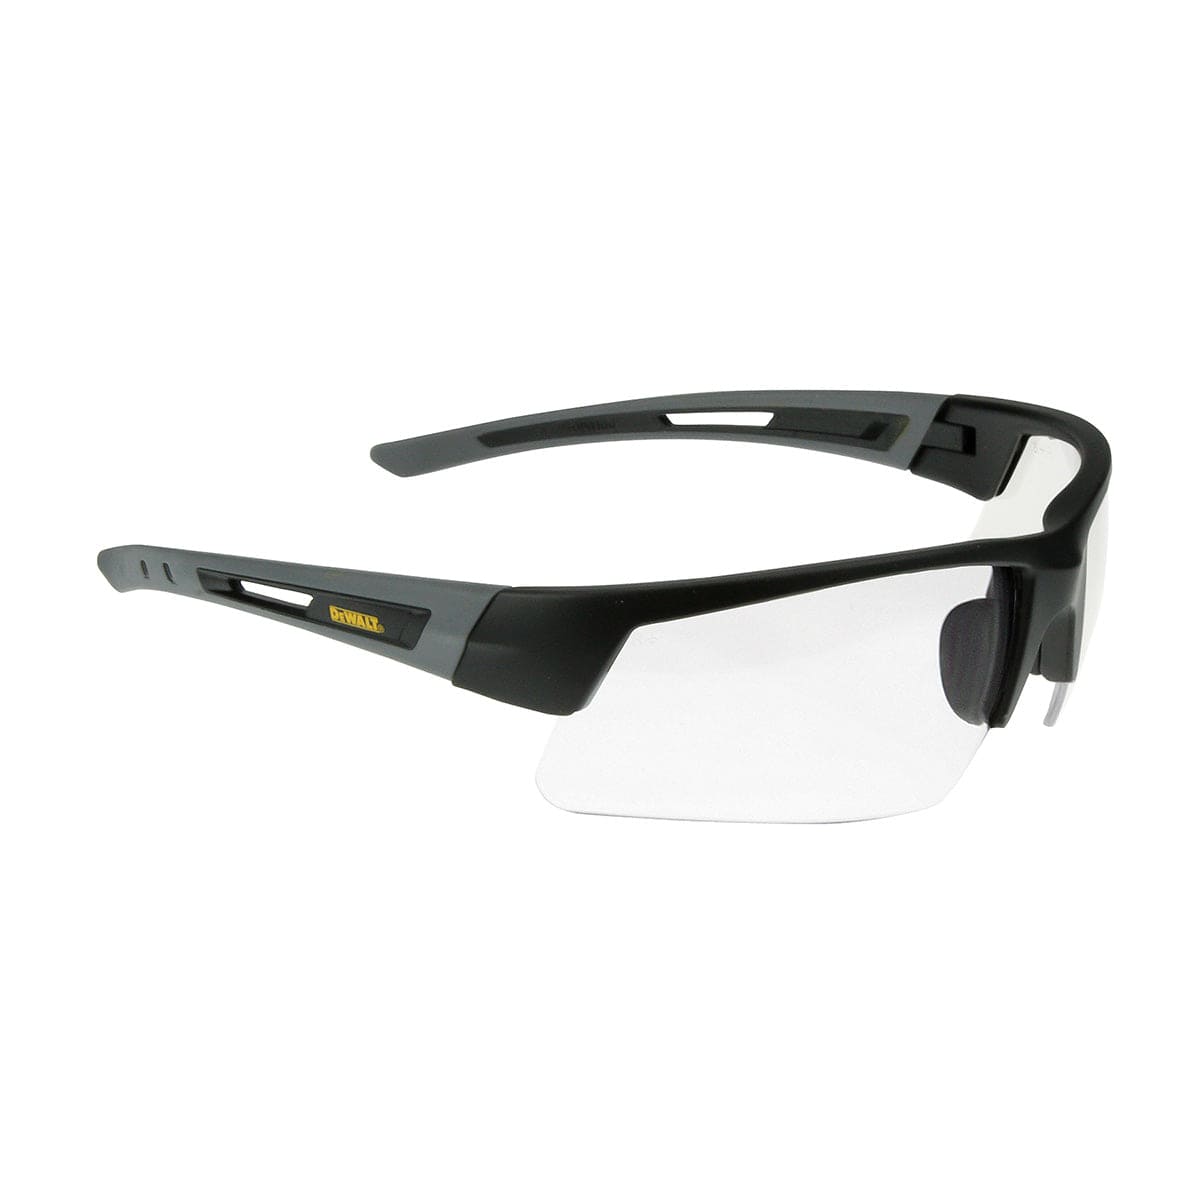 DEWALT Crosscut Safety Glasses